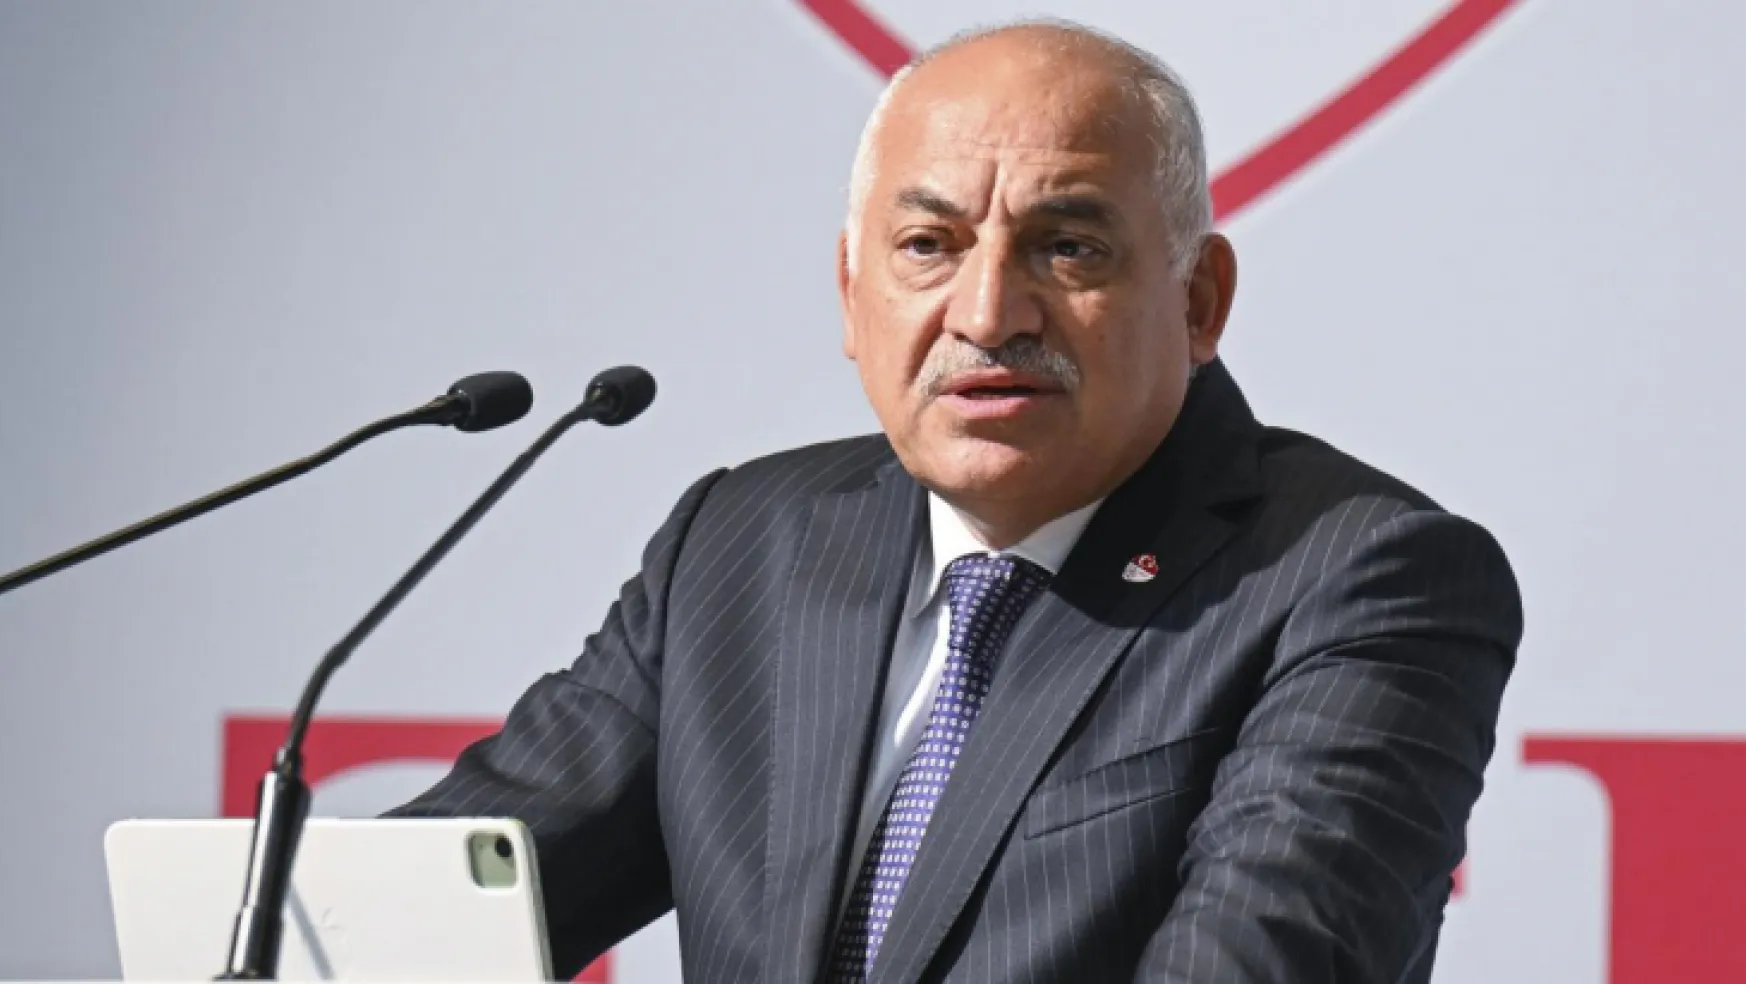 Galatasaray'dan TFF Başkanı Büyükekşi'ye istifa daveti